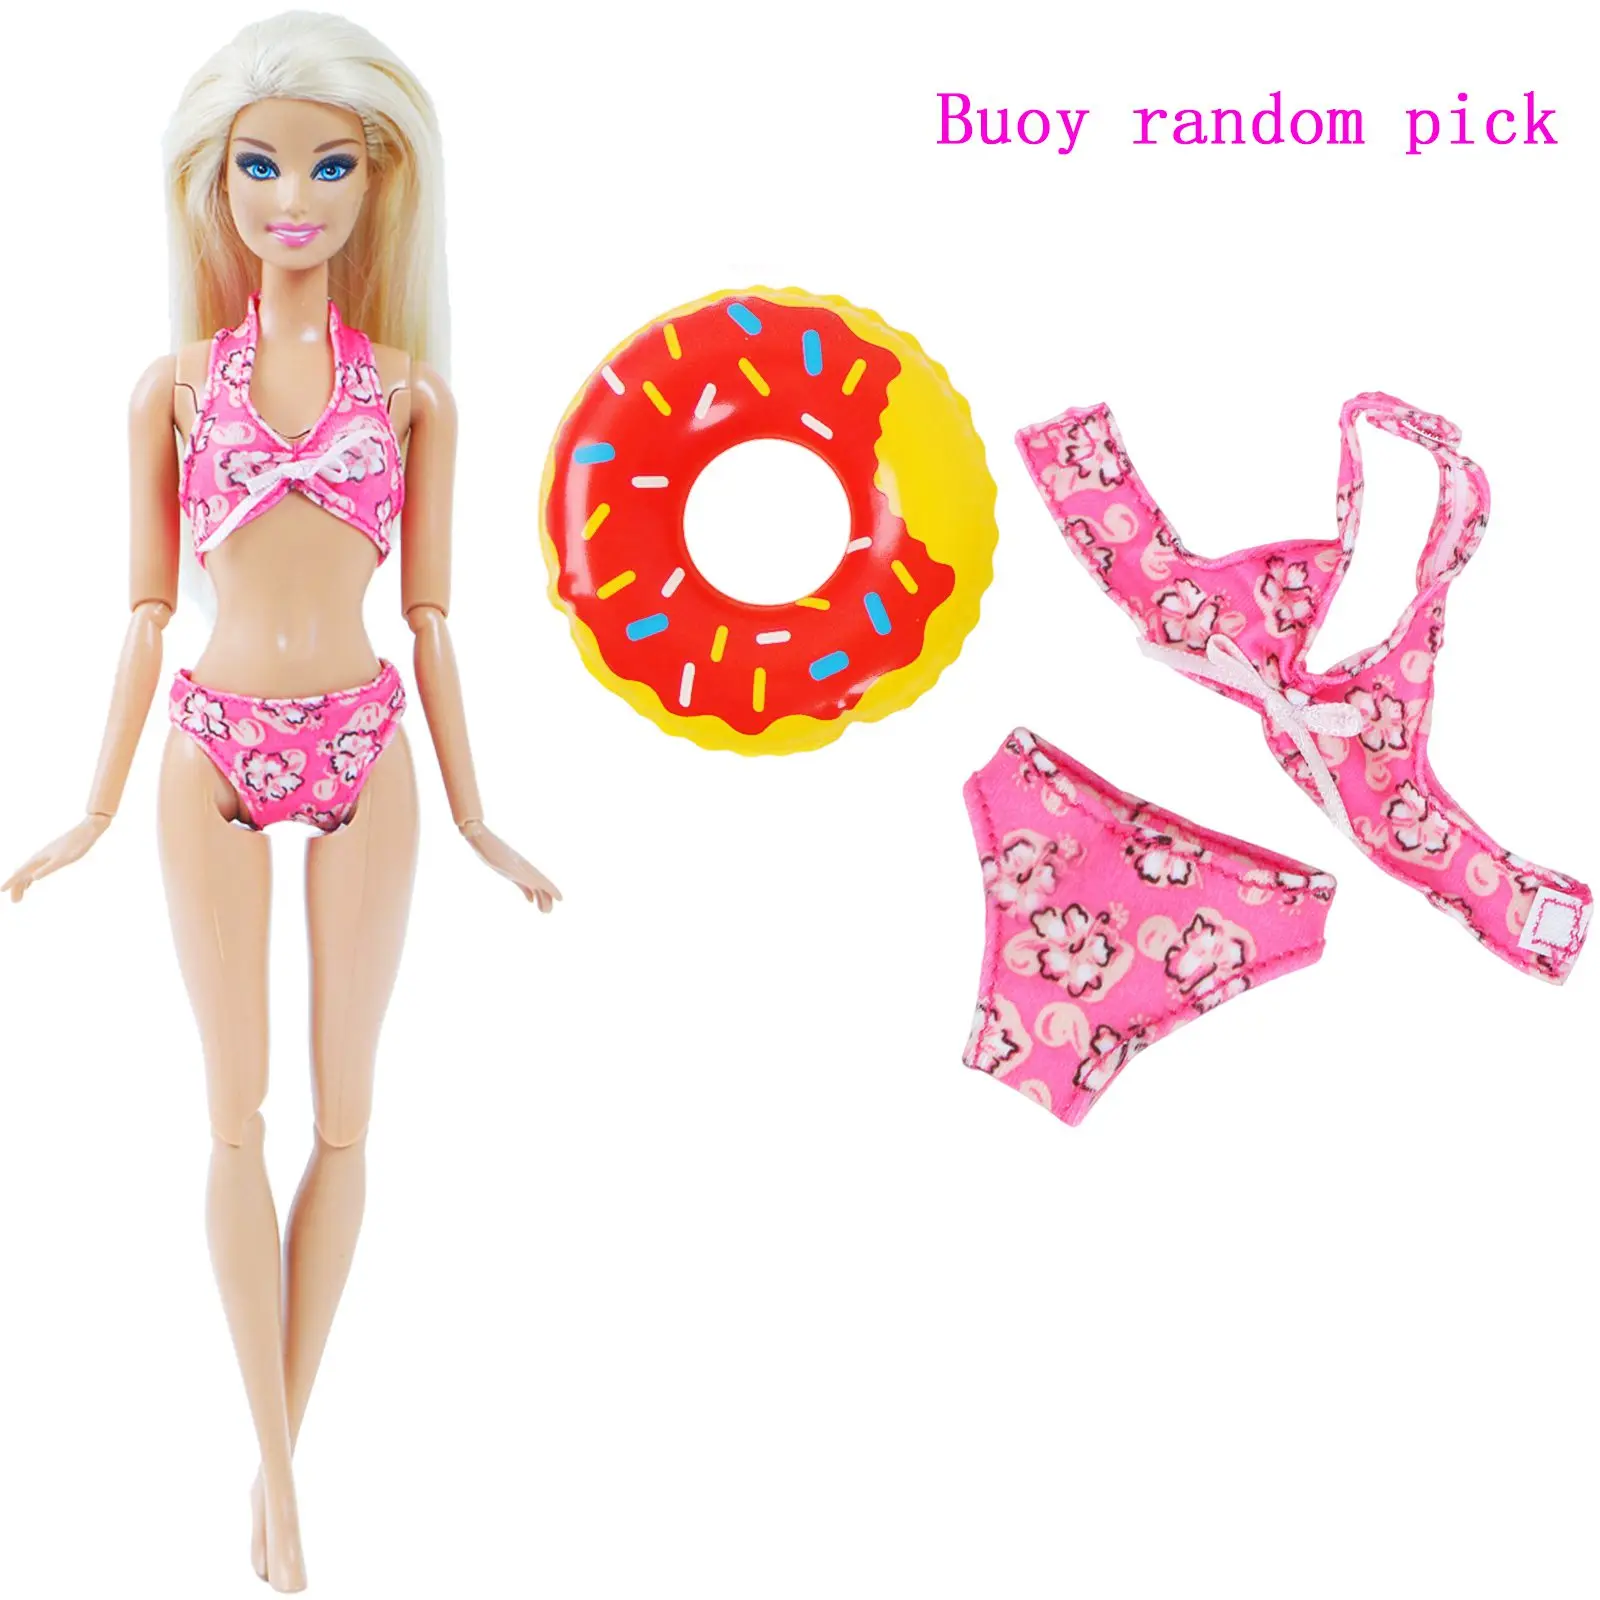 1х купальники для кукол пляжная купальная одежда прелестное бикини купальник + случайный 1х плавучий буй спасательный пояс кольцо для Барби